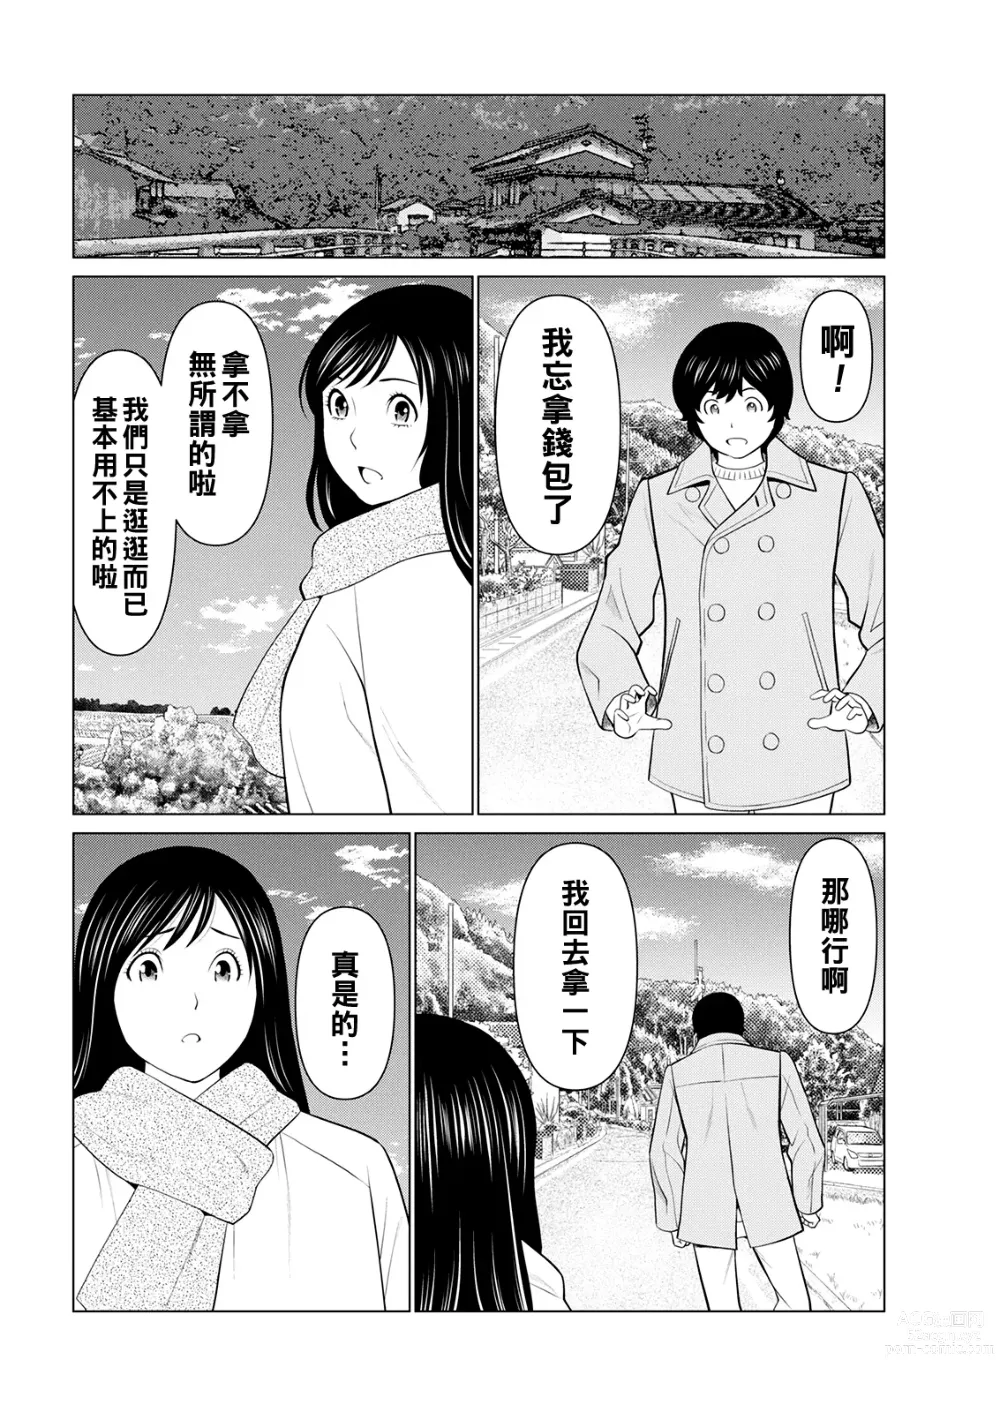 Page 32 of manga Rengoku no Sono - The Garden of Purgatory